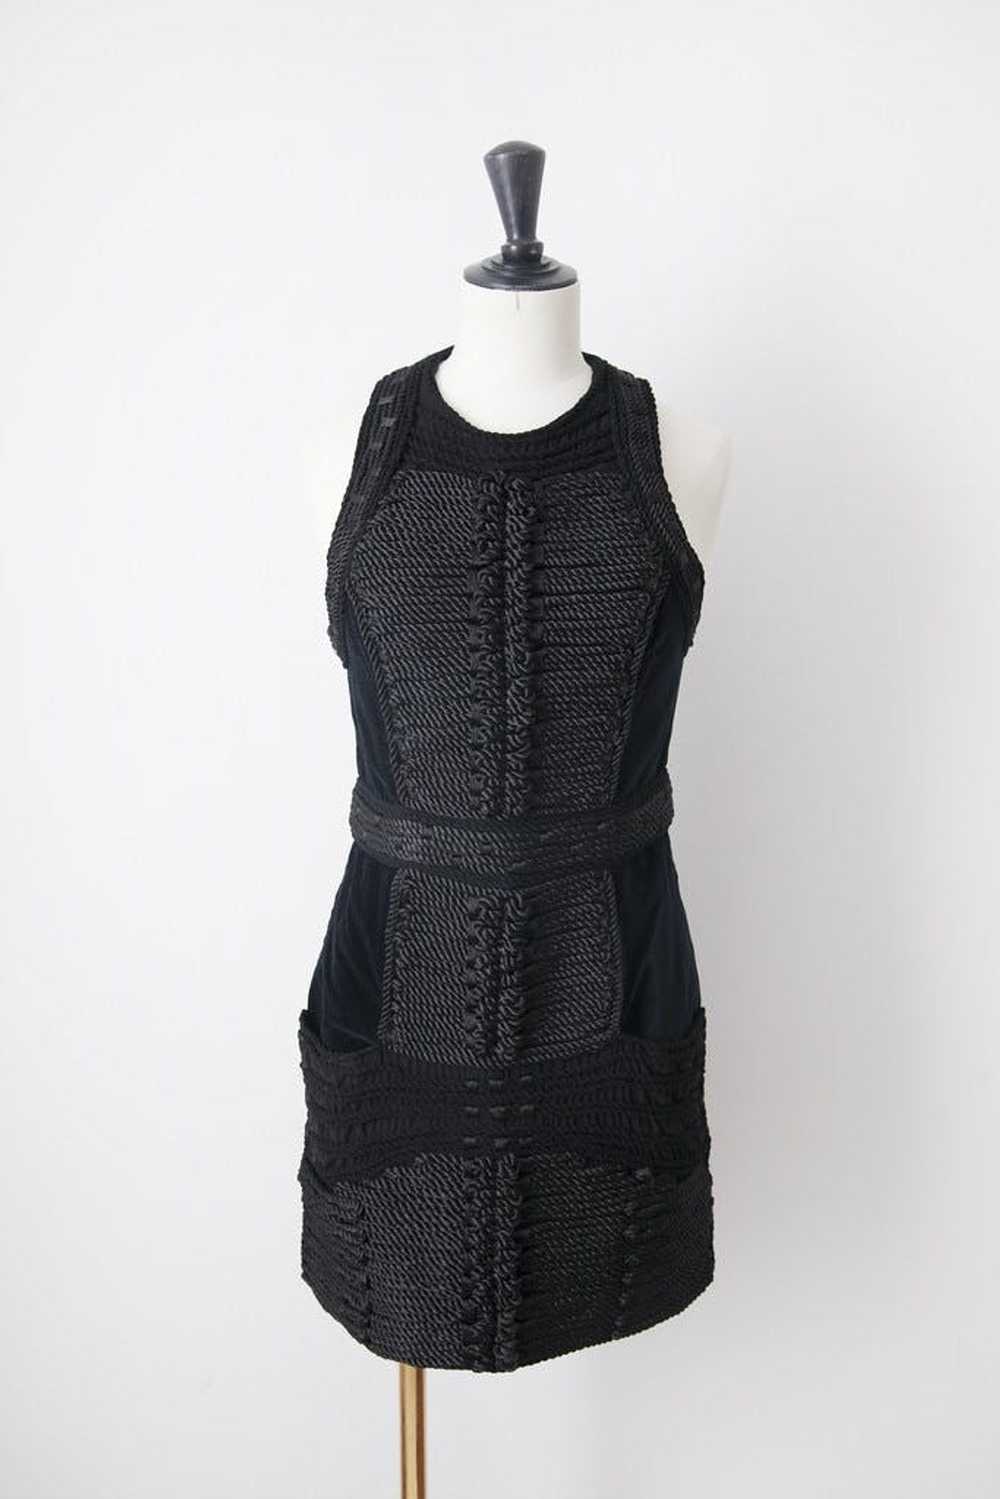 Balmain X H&M Black velvet dress - image 1